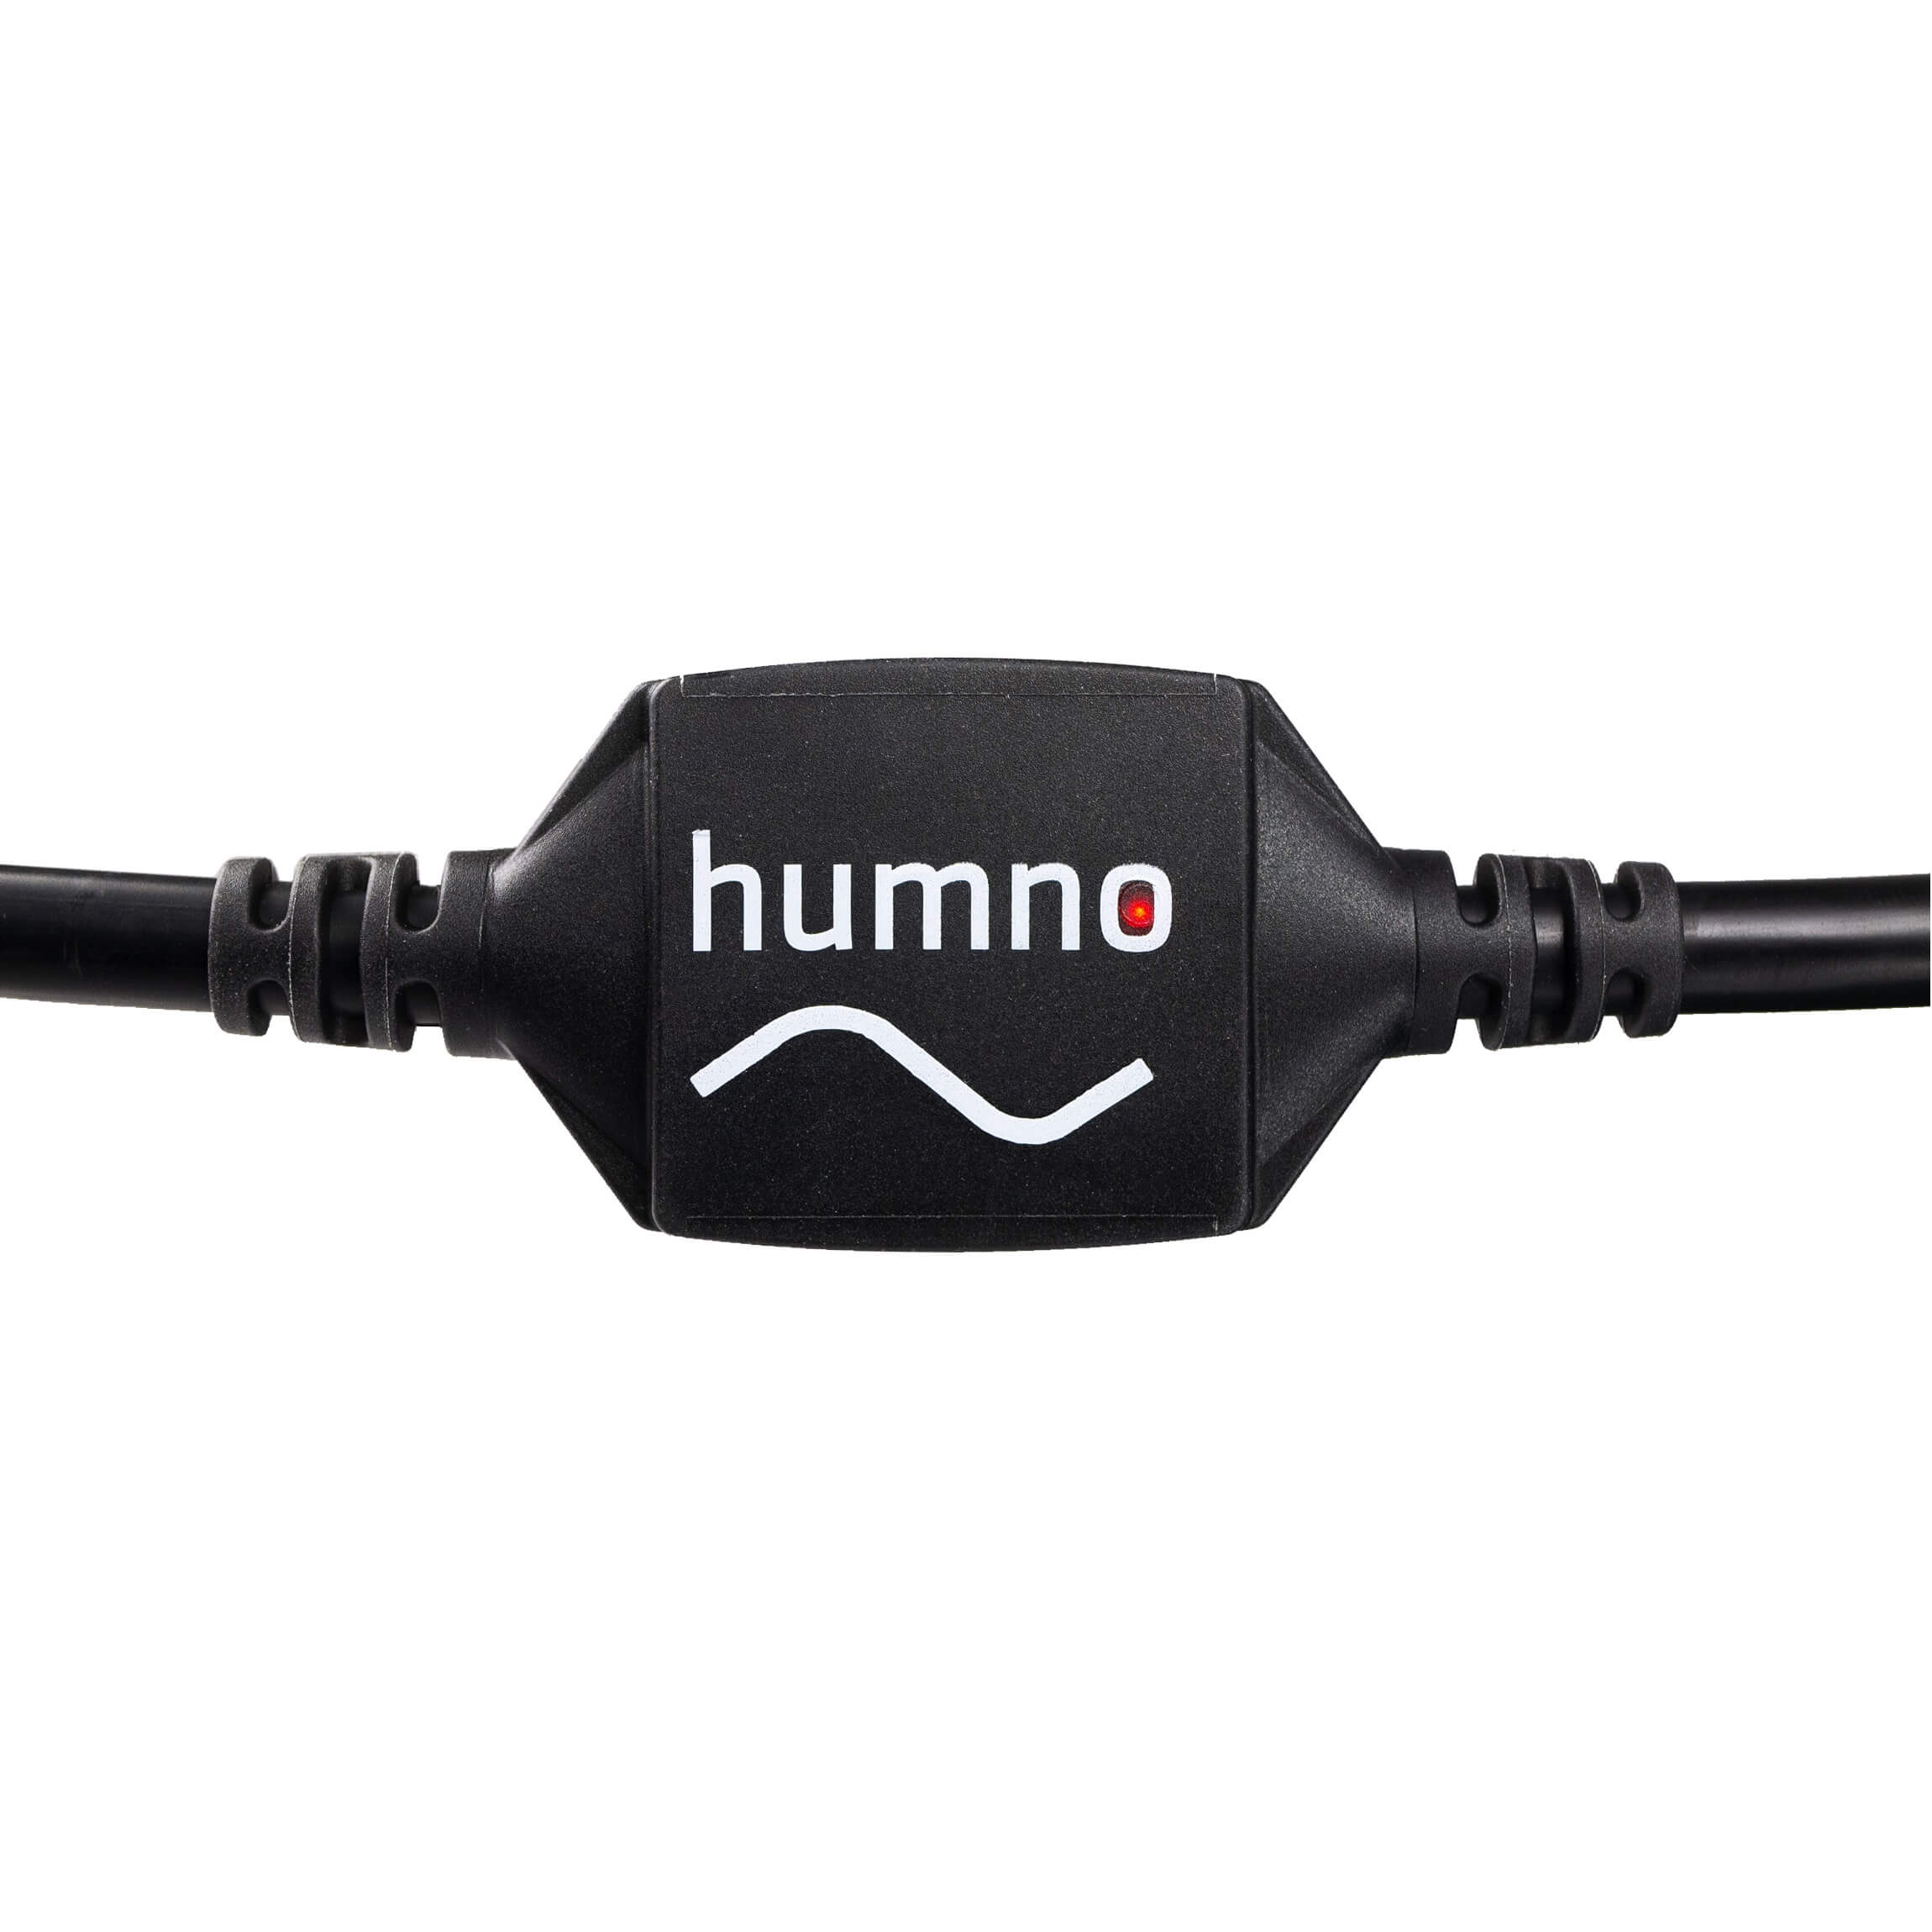 Morley Humno - Hum and Buzz Noise Eliminator, LED indicator